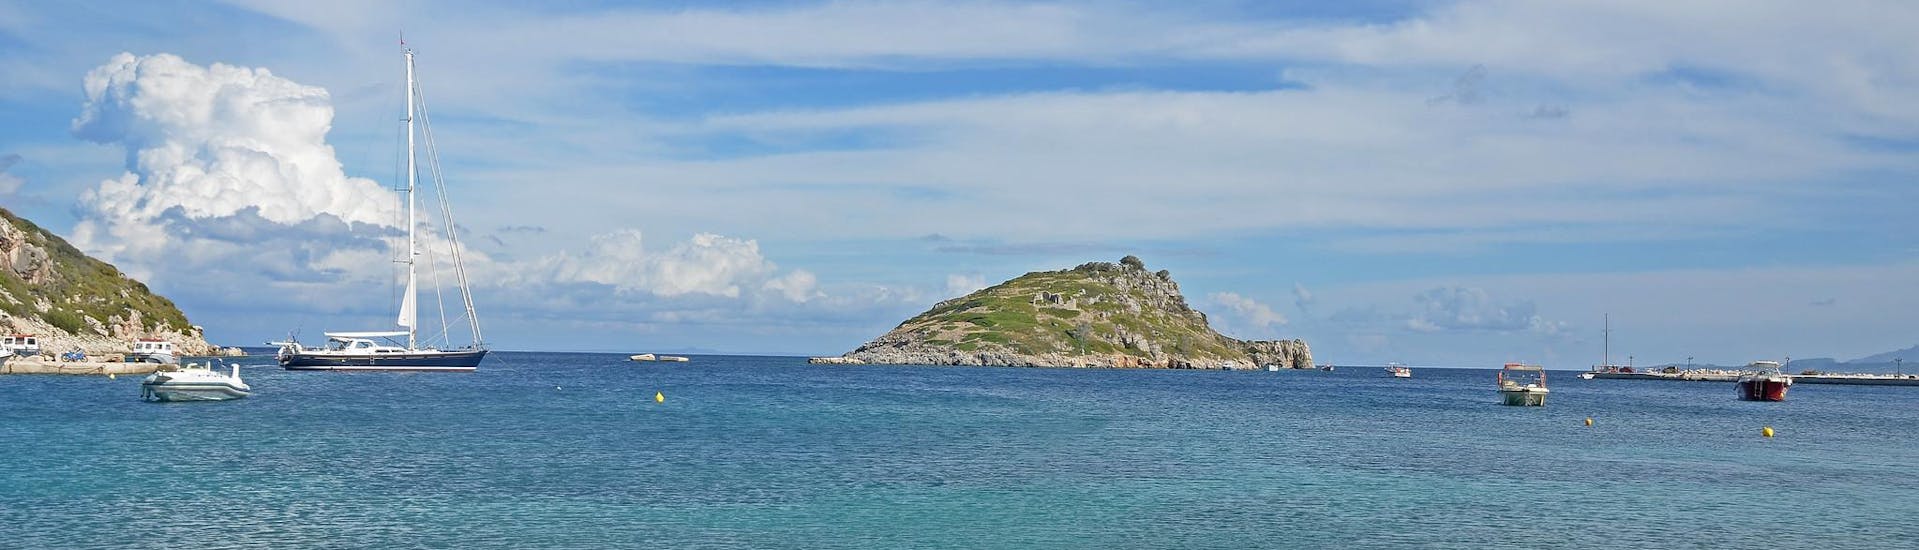 El puerto de Agios Nikolaos, en Zante, punto de partida de paseos en barco por las islas Jónicas.